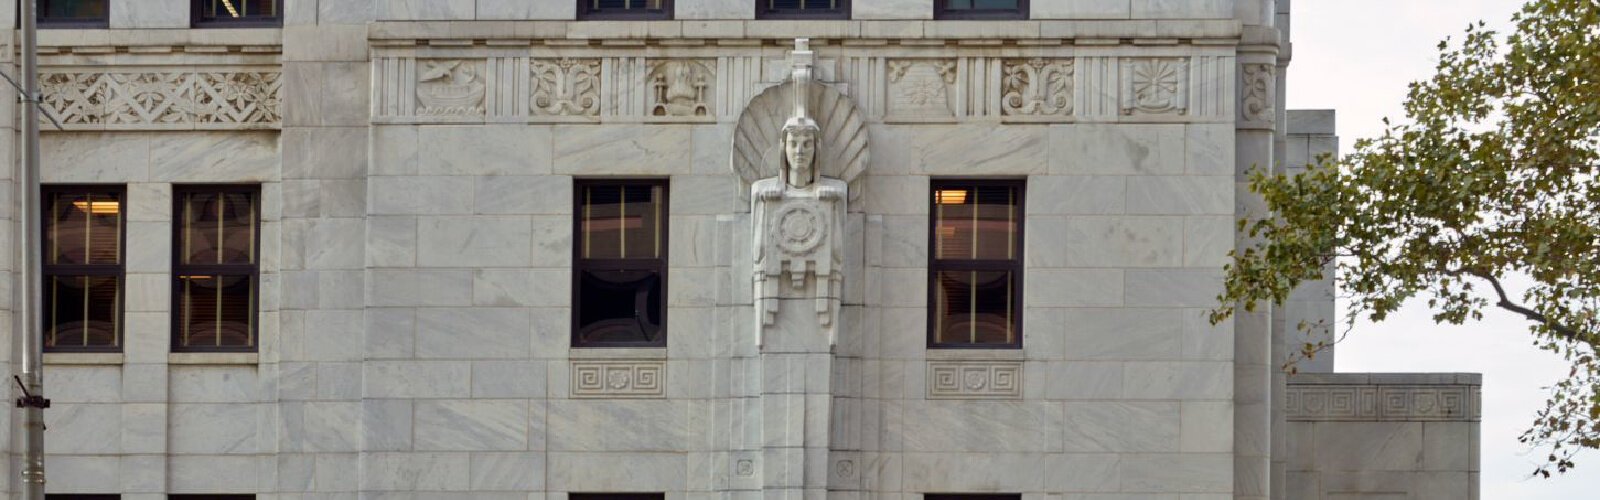 俄亥俄州最高法院在托马斯·j·莫耶俄亥俄州司法中心开会。